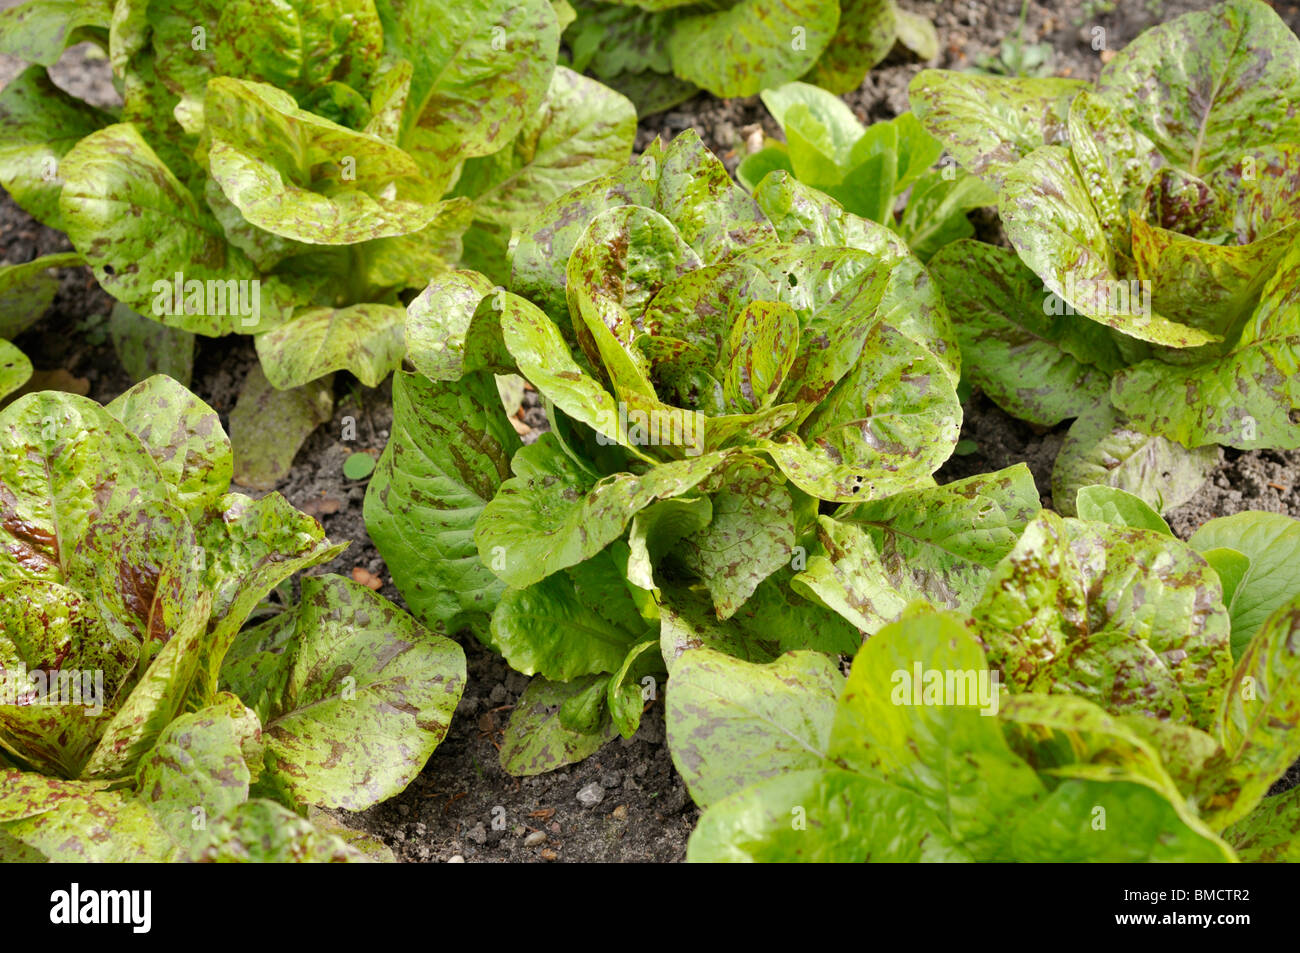 Cos lettuce (Lactuca sativa var. longifolia) Stock Photo